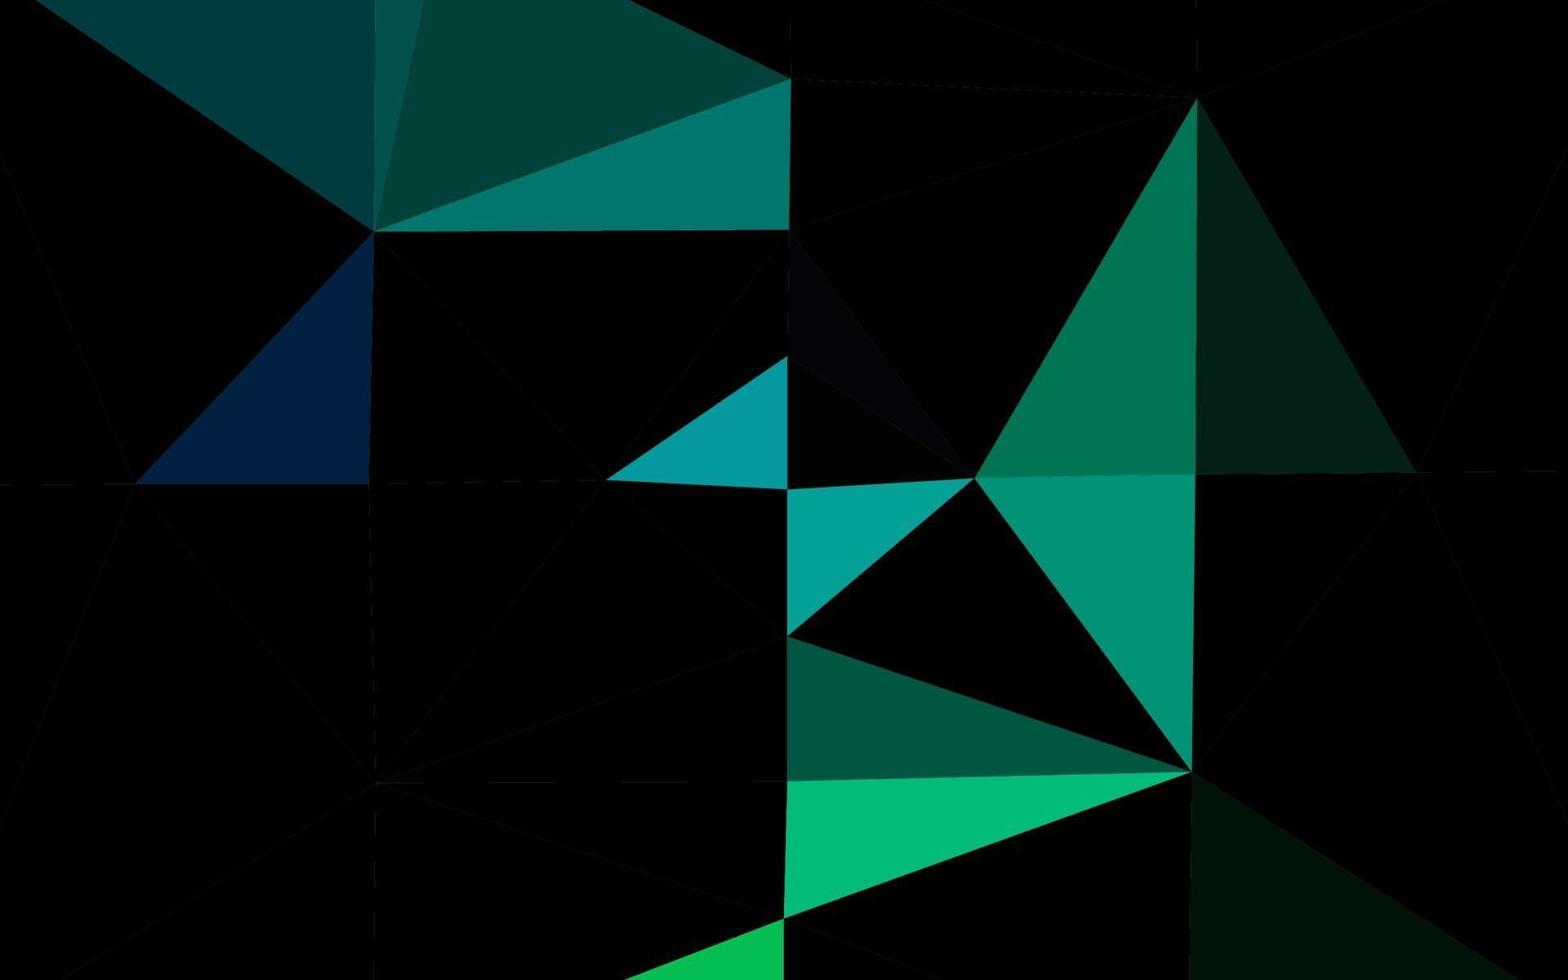 cubierta poligonal abstracta de vector azul oscuro, verde.